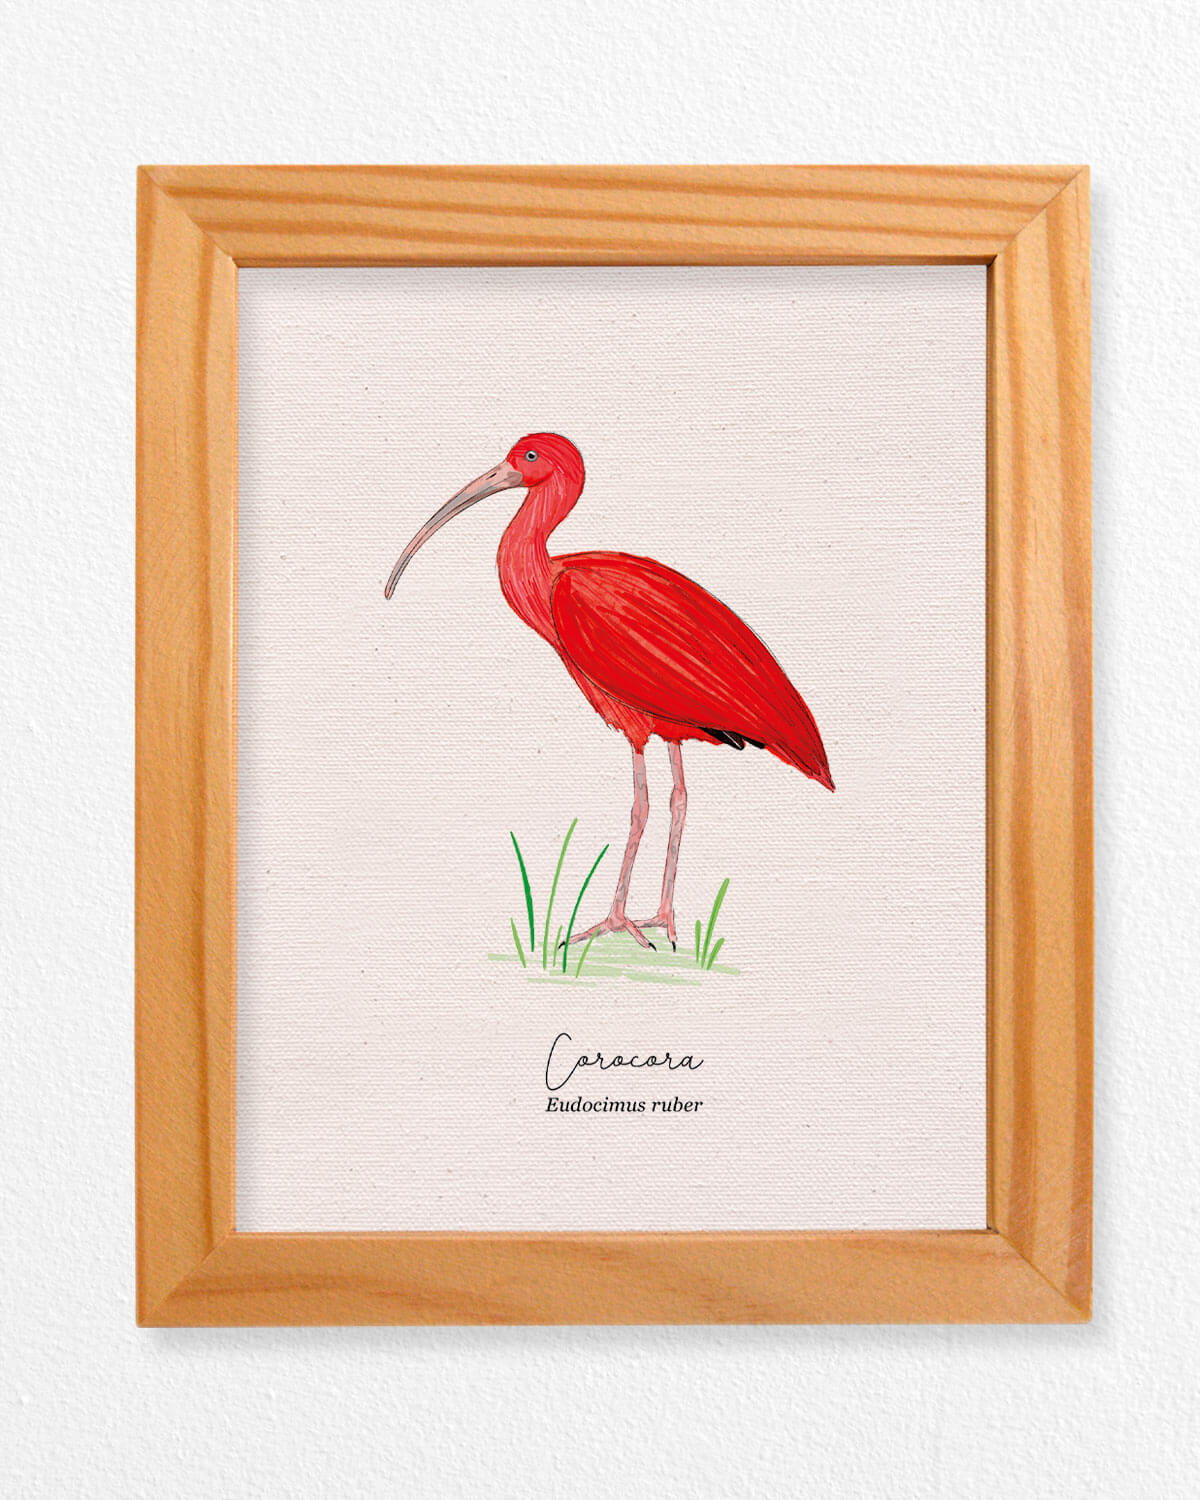 Coracora ave colombia aves de colombia cuadros regalos souvenirs colombianos Colombia arte artesanías mapas postales decoracion